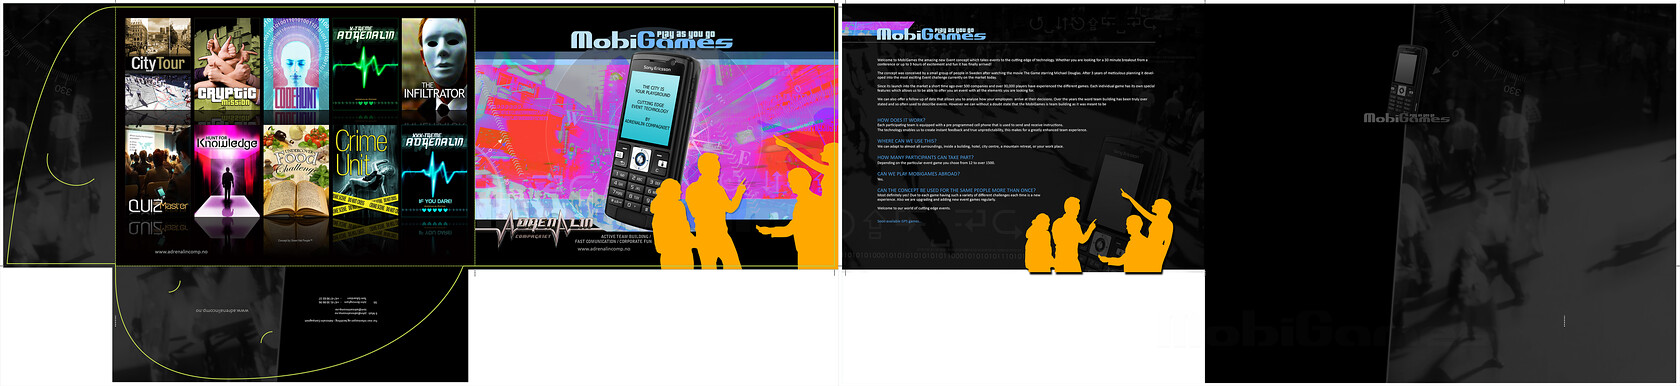 Mobigames Presentation Folder Design 
 Design of a presentation folder for Mobigames 
 Keywords: Capacity, Graphics, Artwork, Designer, A4, Document, Black, Landscape, Interlocking, Glued, DL, Print, Printed, Card, Wallet, Business Card Holder